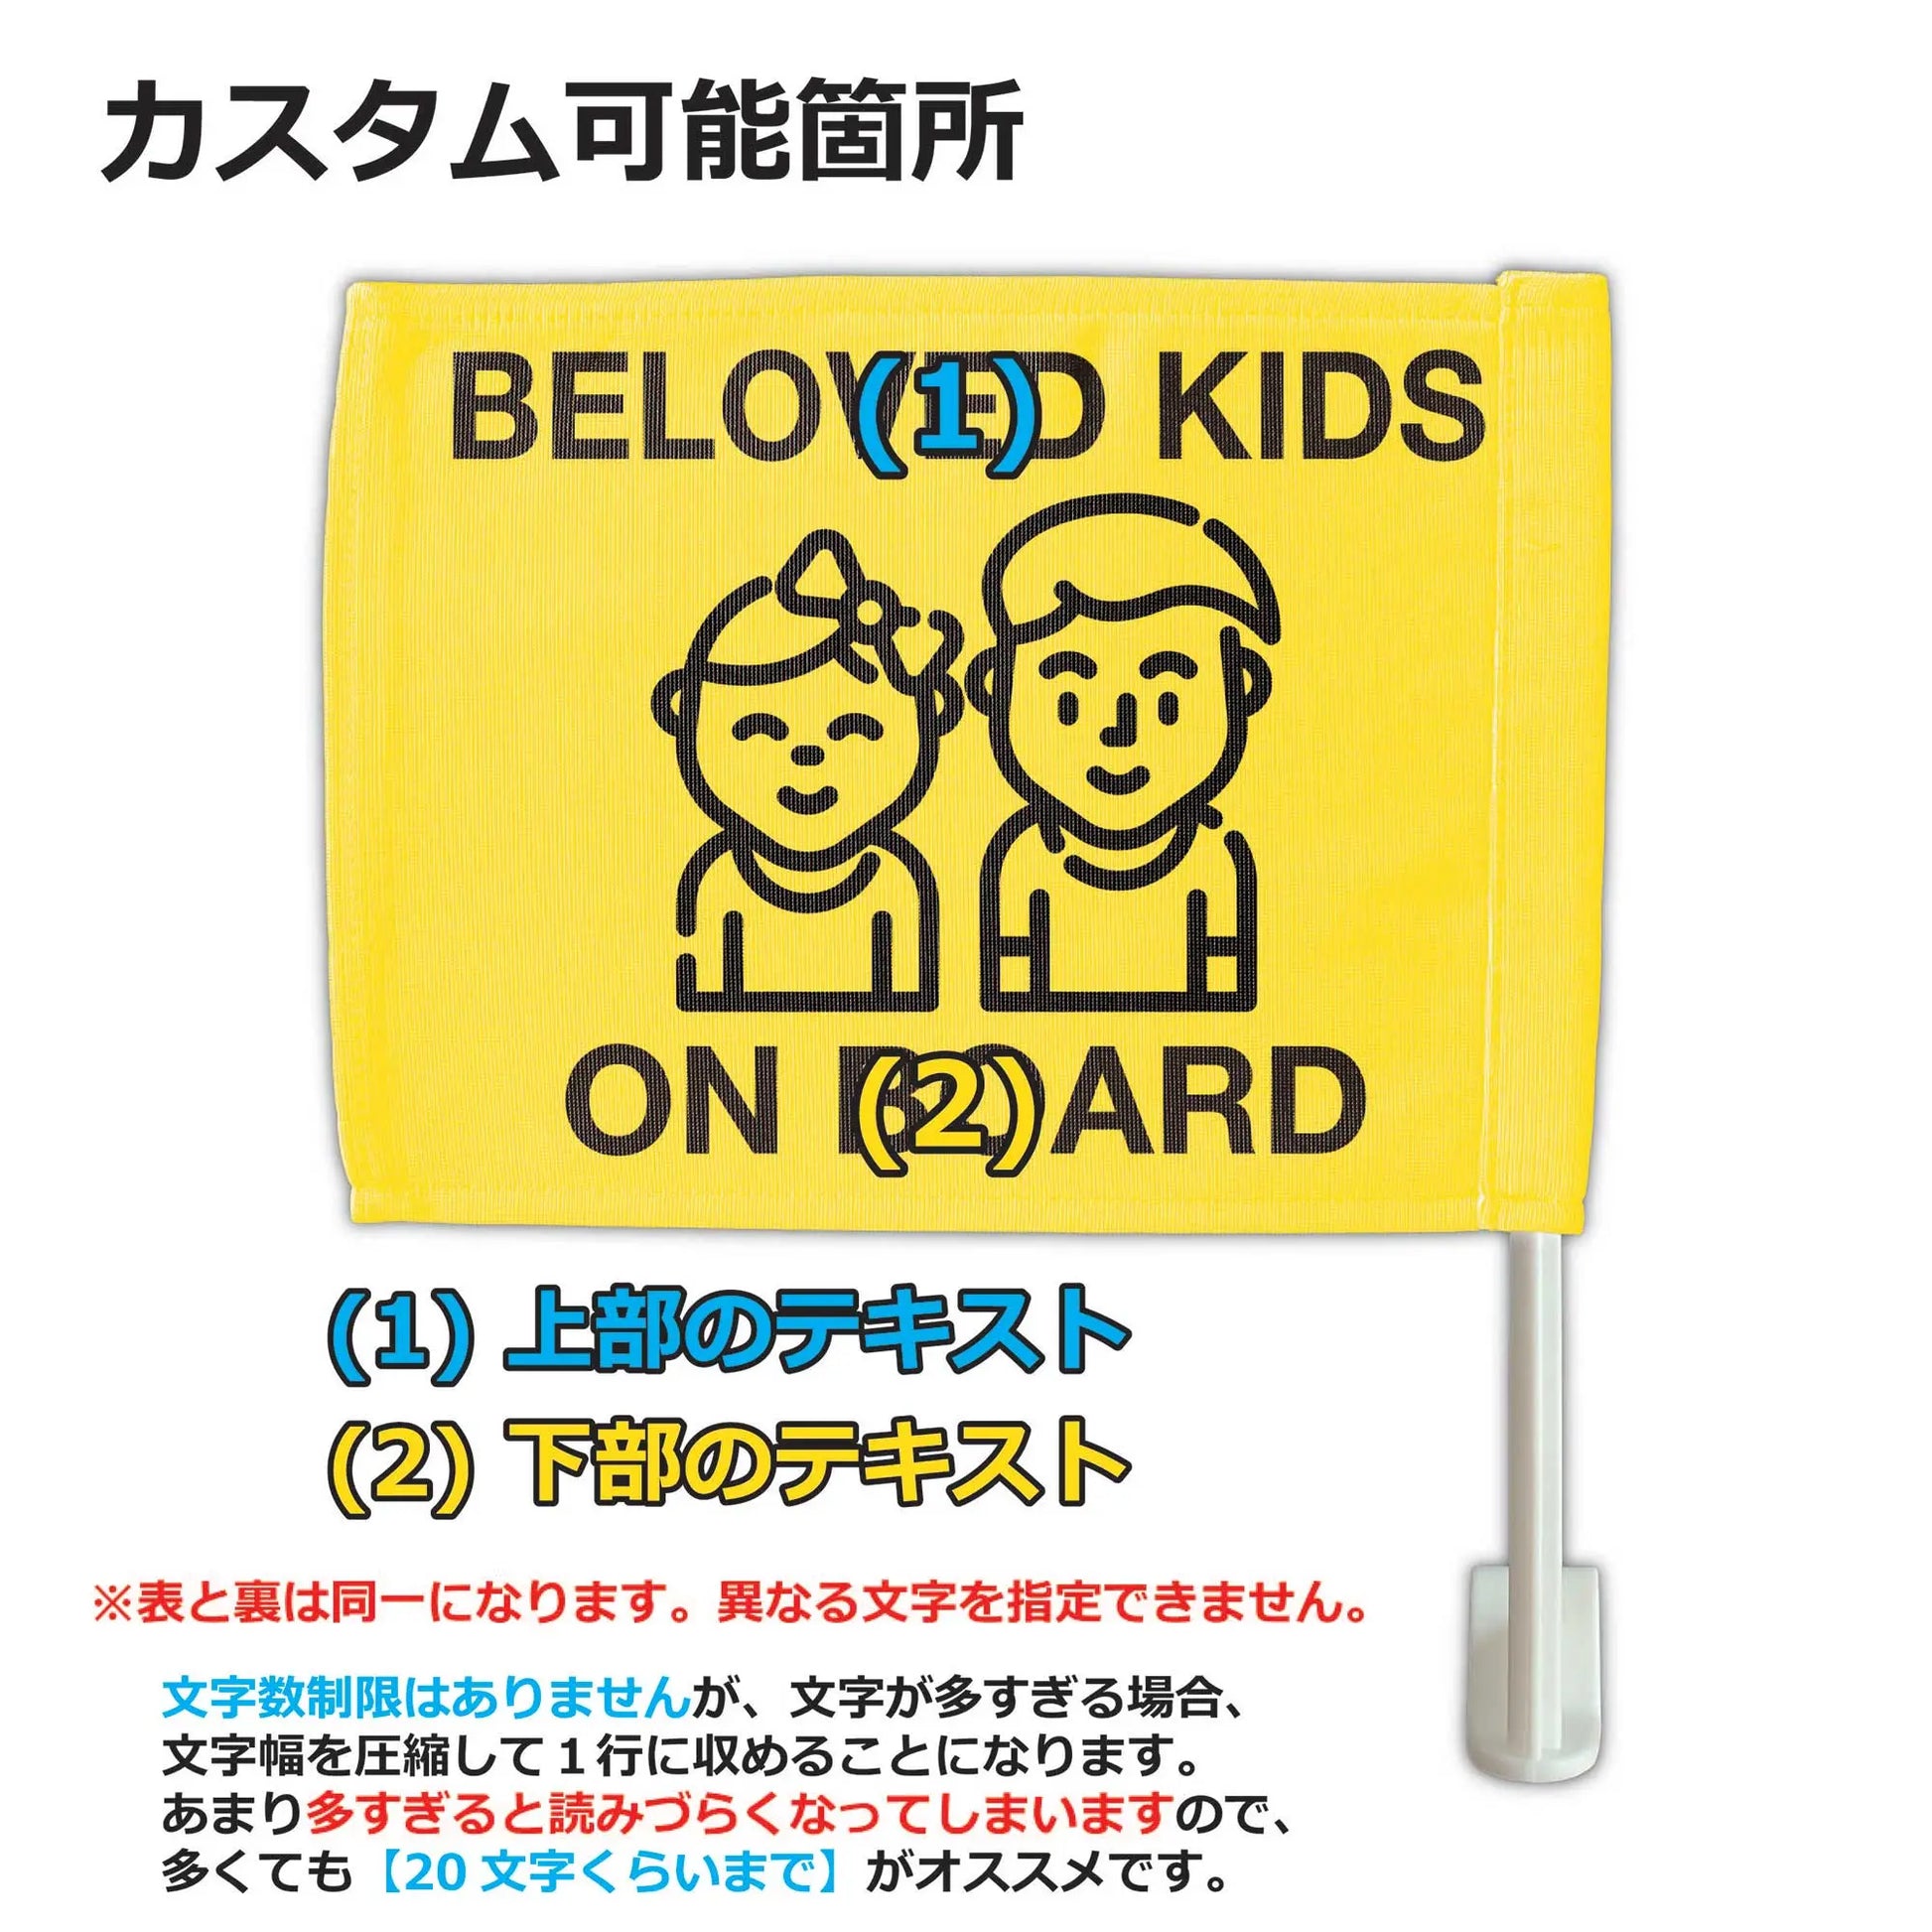 【カーフラッグ】KIDS ON BOARD/子供乗ってます/自動車用オリジナルフラッグ・旗 PL8HERO